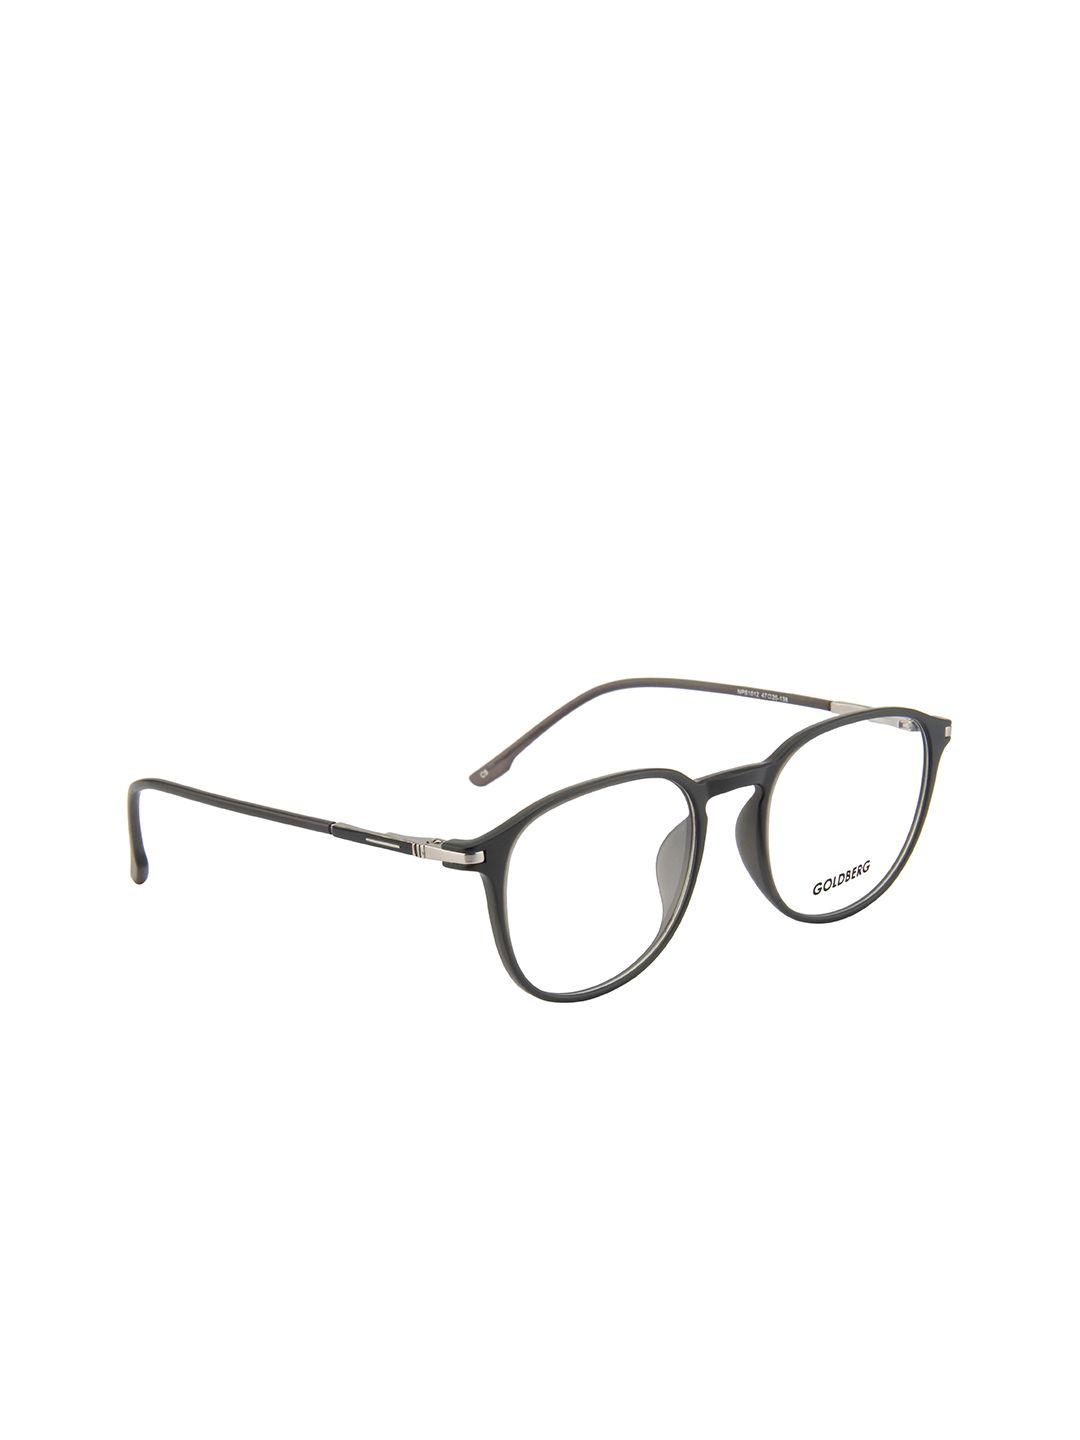 gold berg unisex grey full rim wayfarer frames eyeglasses